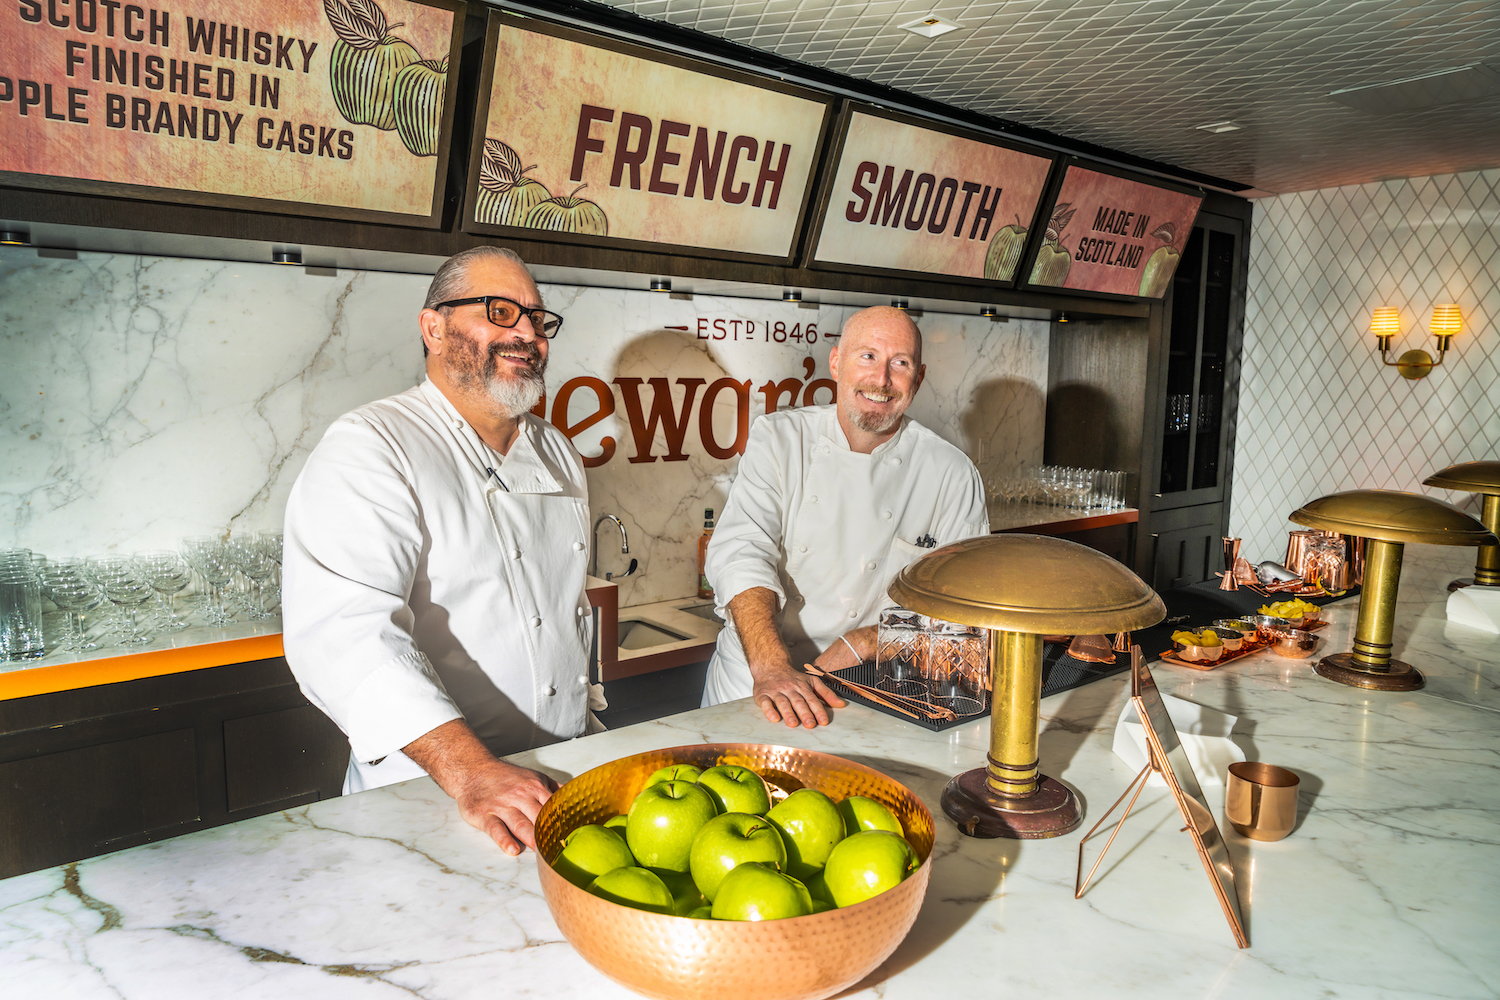 Chef Riad Nasr and Chef Lee Hanson launch Dewar